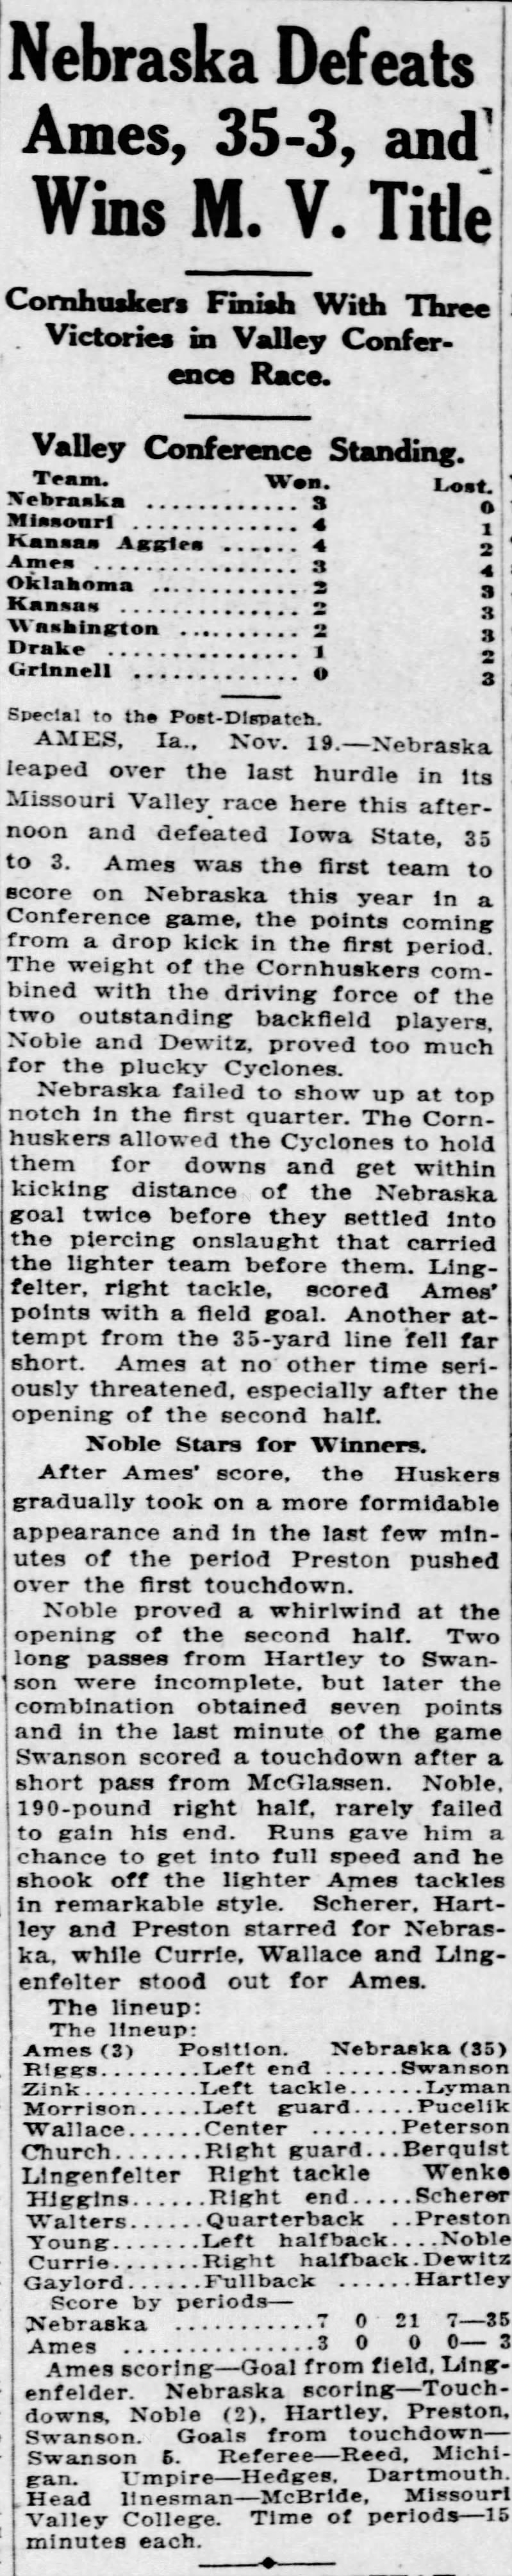 1921 Nebraska-Iowa State football, St. Louis P-D